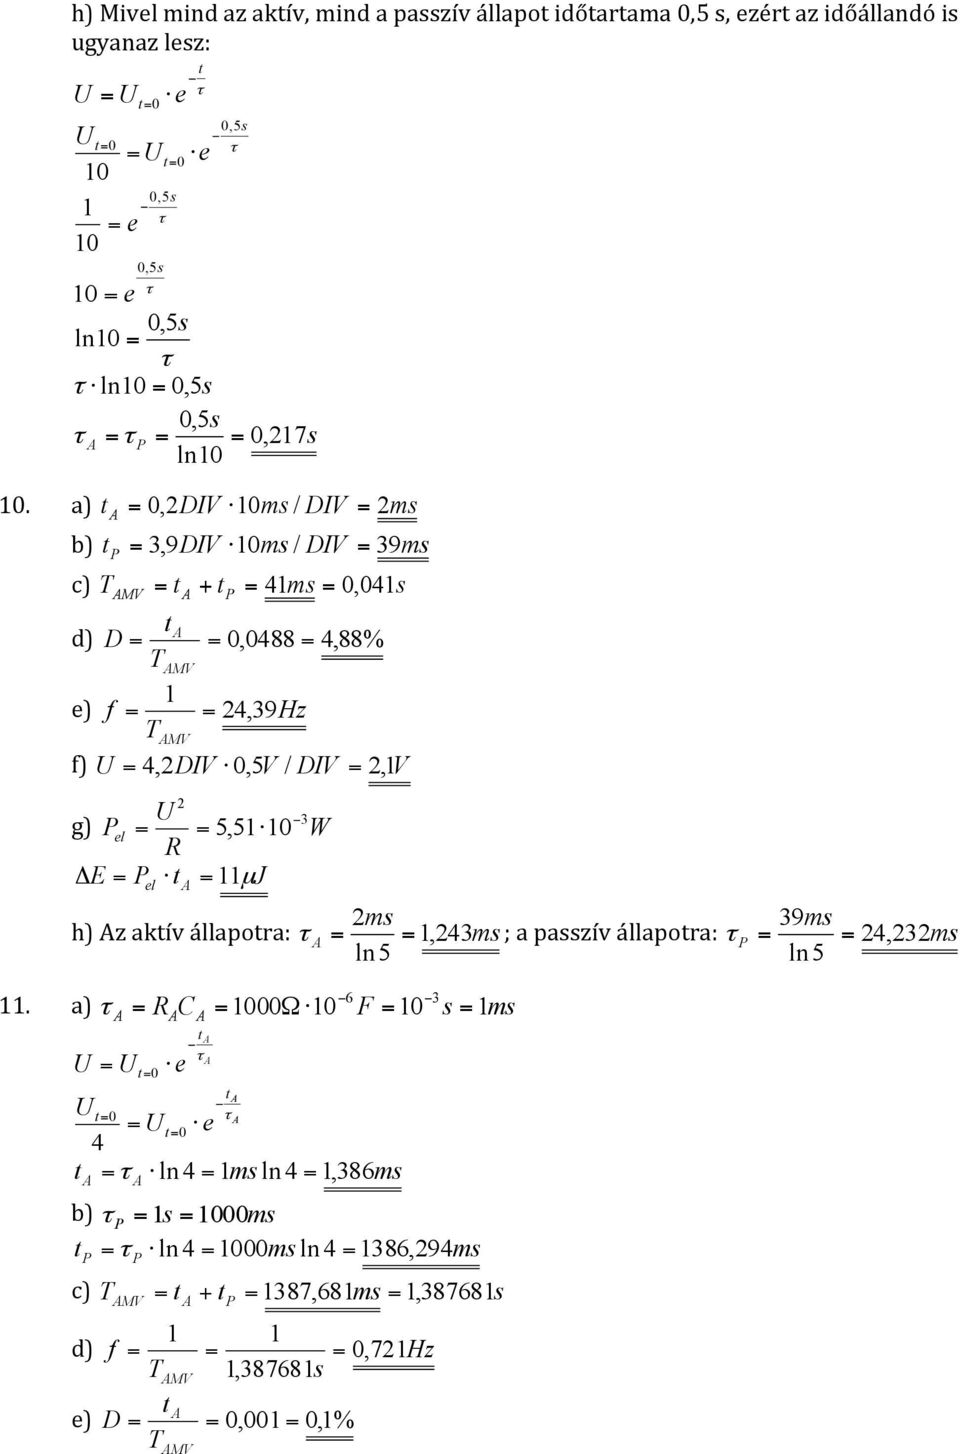 el = = 5,5 0 W R Δ E = = J el µ ms 39ms h) z akív állapora: = =, 43ms ; a passzív állapora: = = 4, 3ms ln5 ln5 6 3.